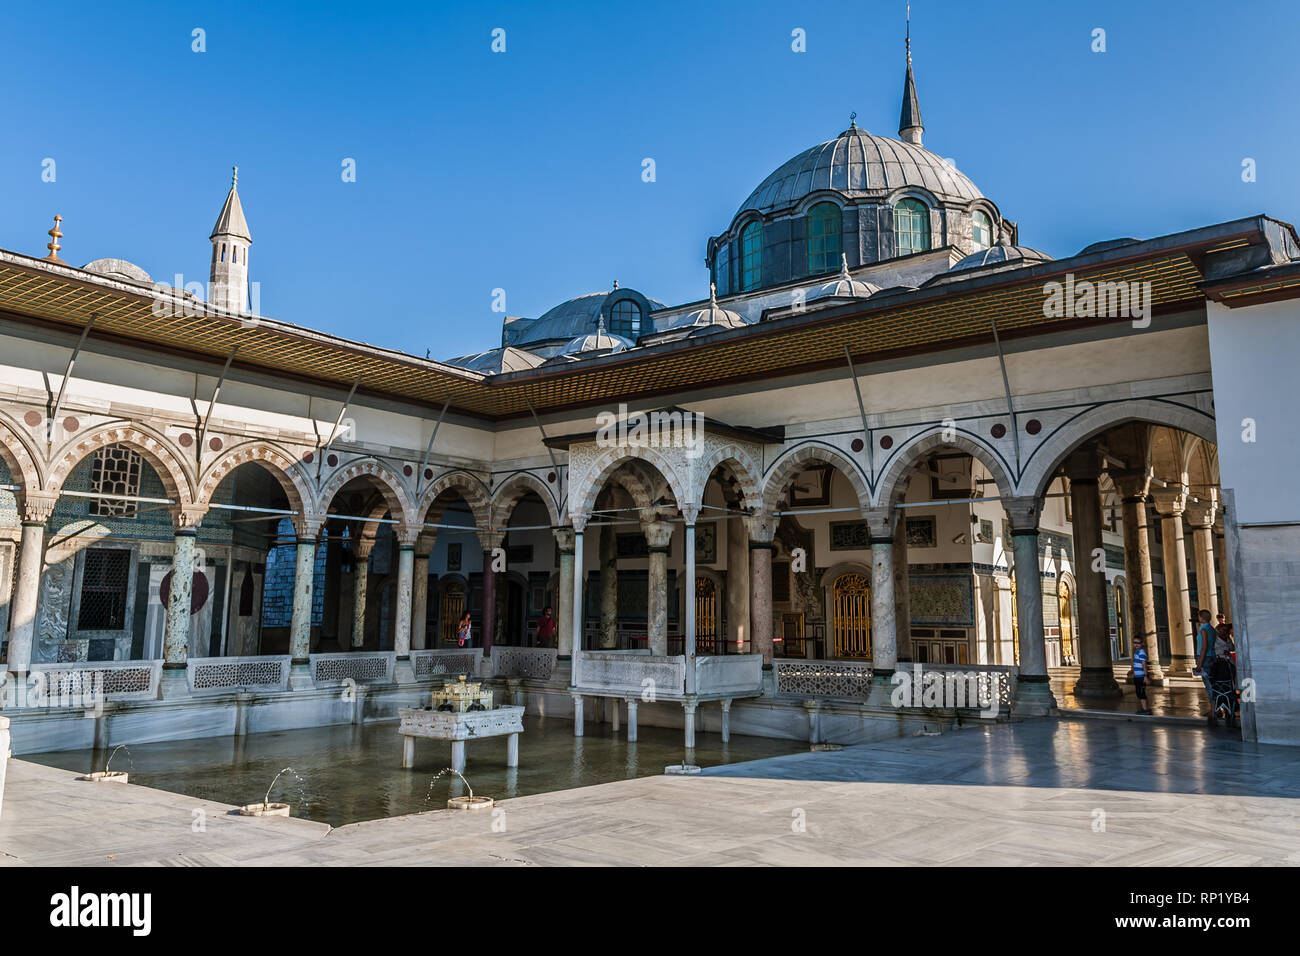 La terrasse supérieure d'une fontaine, d'İftar Bower et kiosque de Bagdad, le palais de Topkapi, Istanbul Banque D'Images